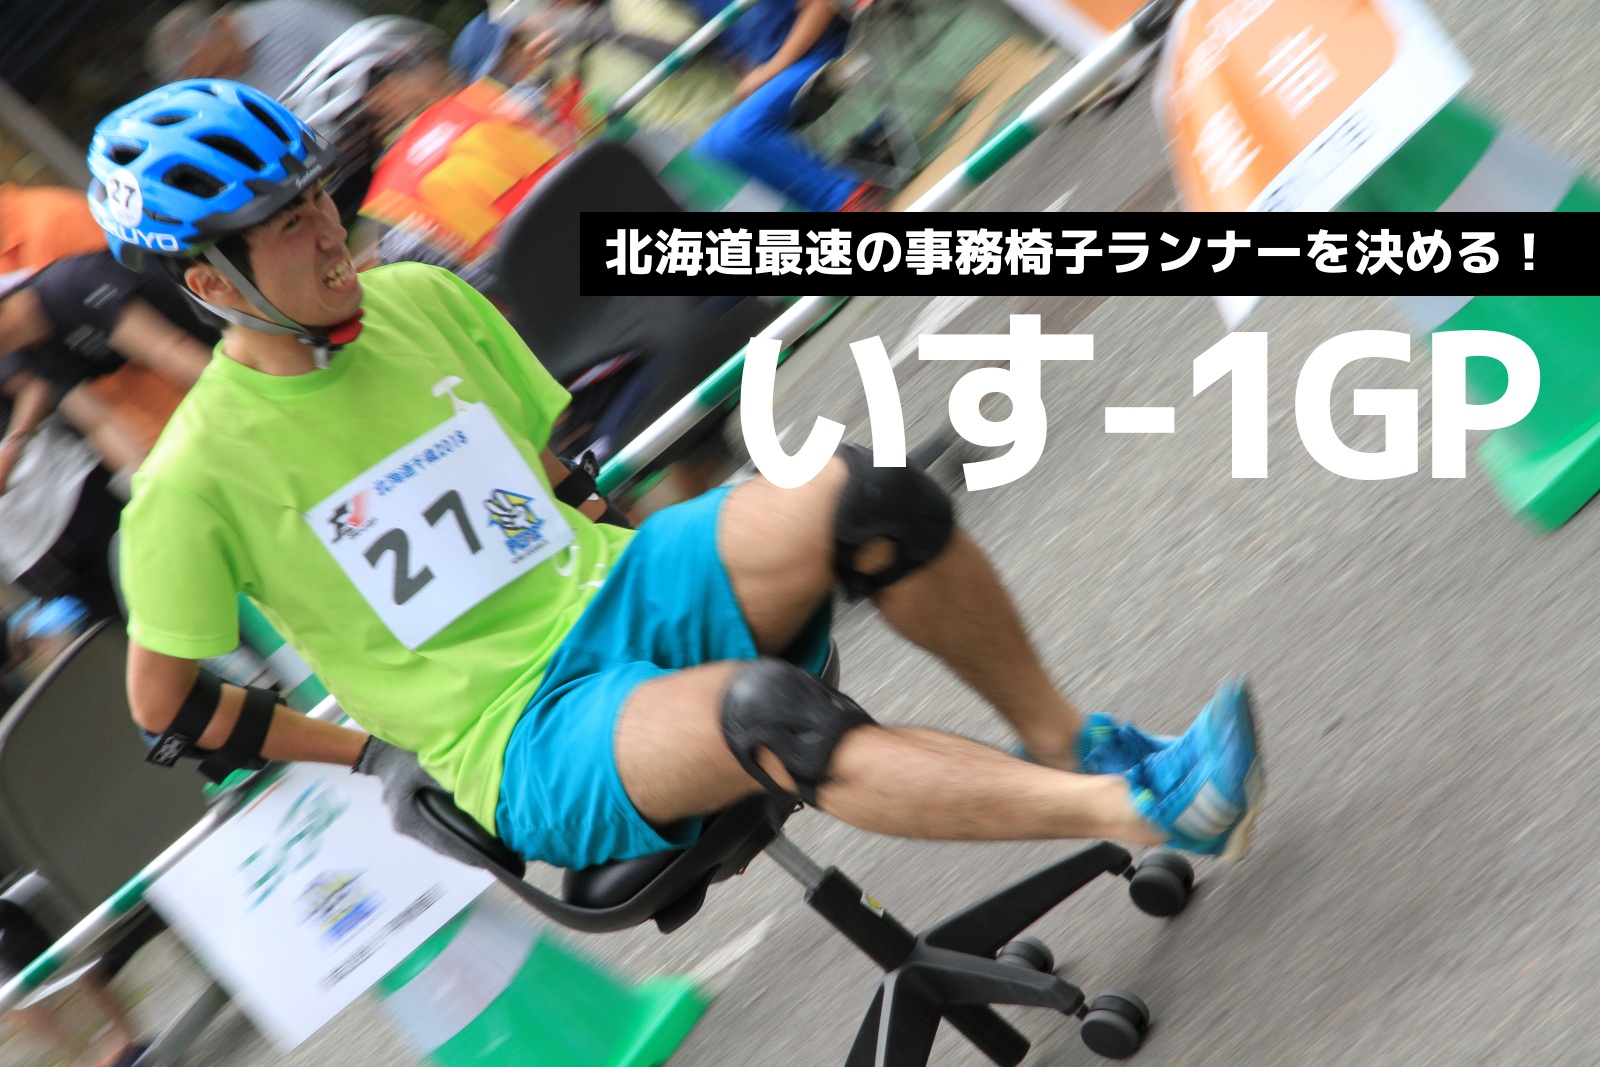 北海道最速の事務椅子ランナーを決定！いす-1GP北海道大会開催